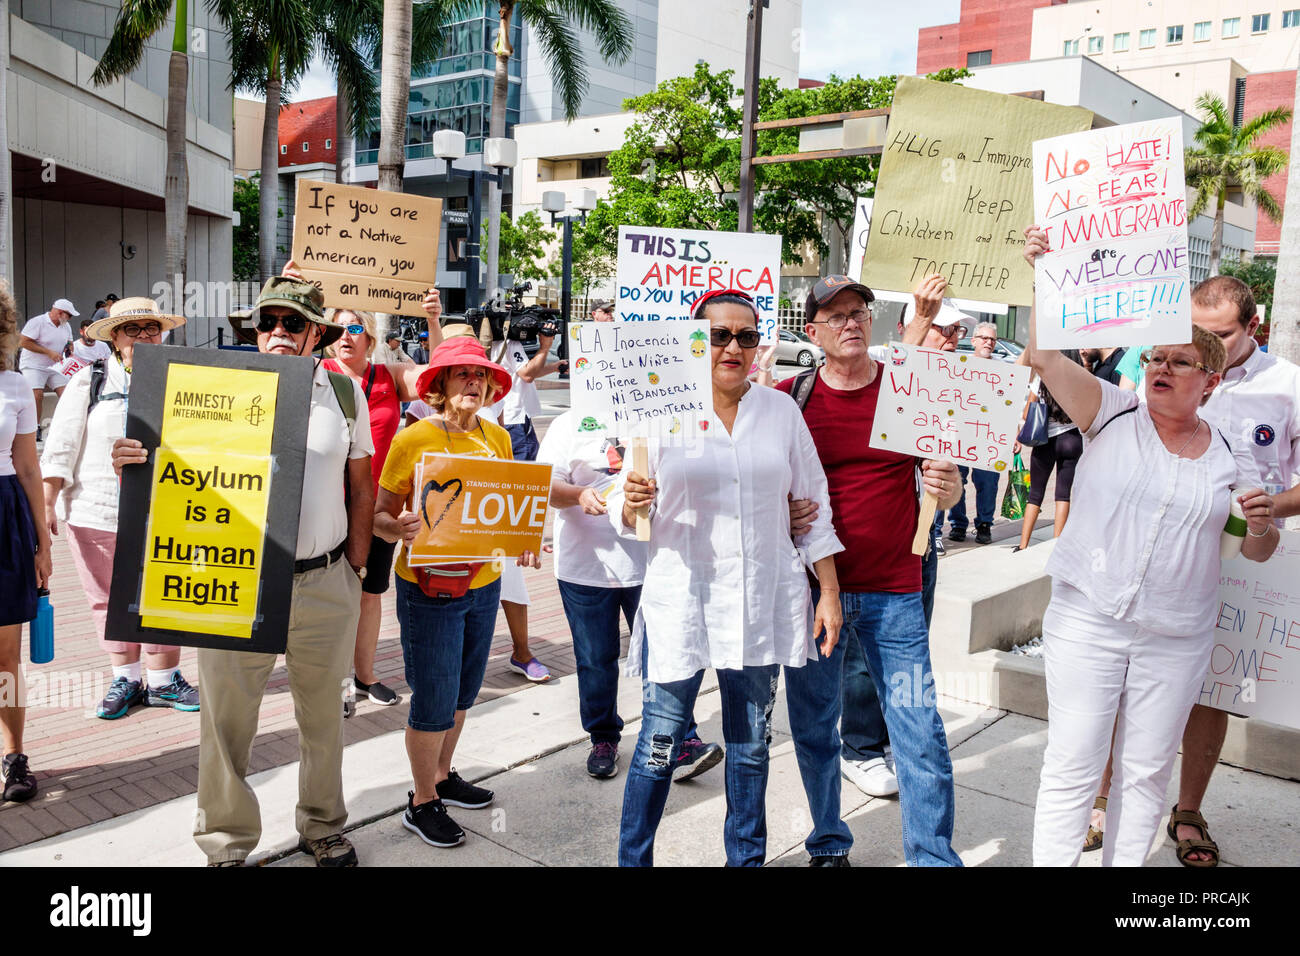 Miami Florida, Demonstration gegen Protestdemonstration, Familien gehören zusammen Freie Kinder illegale Einwanderung, mexikanische Grenzfamilie Separati Stockfoto